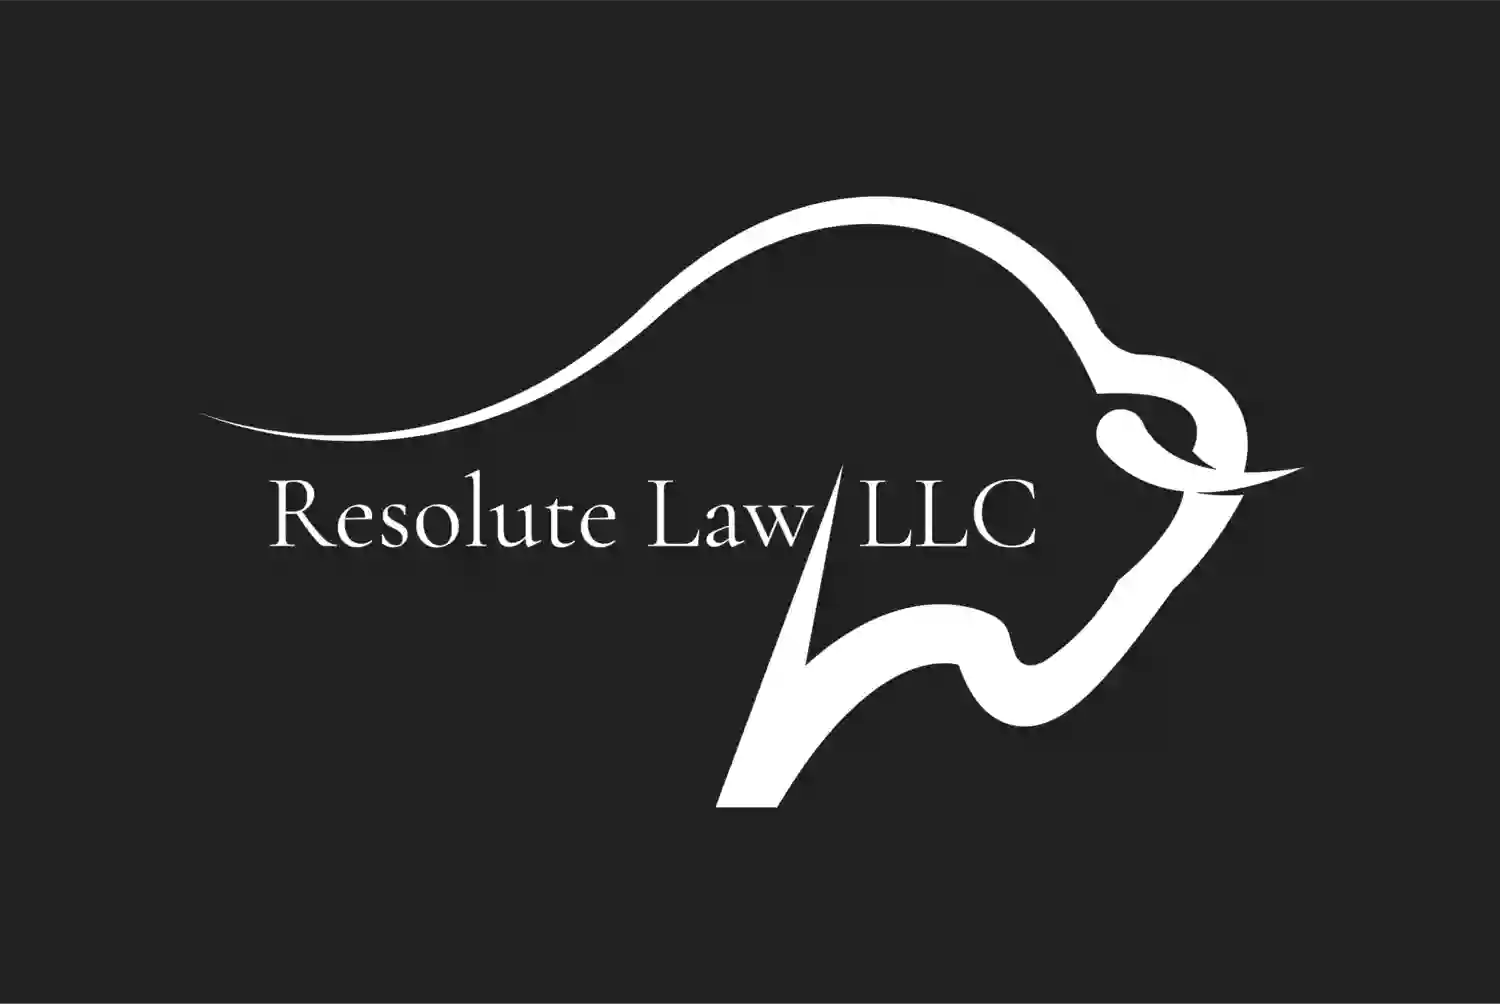 Resolute Law, LLC